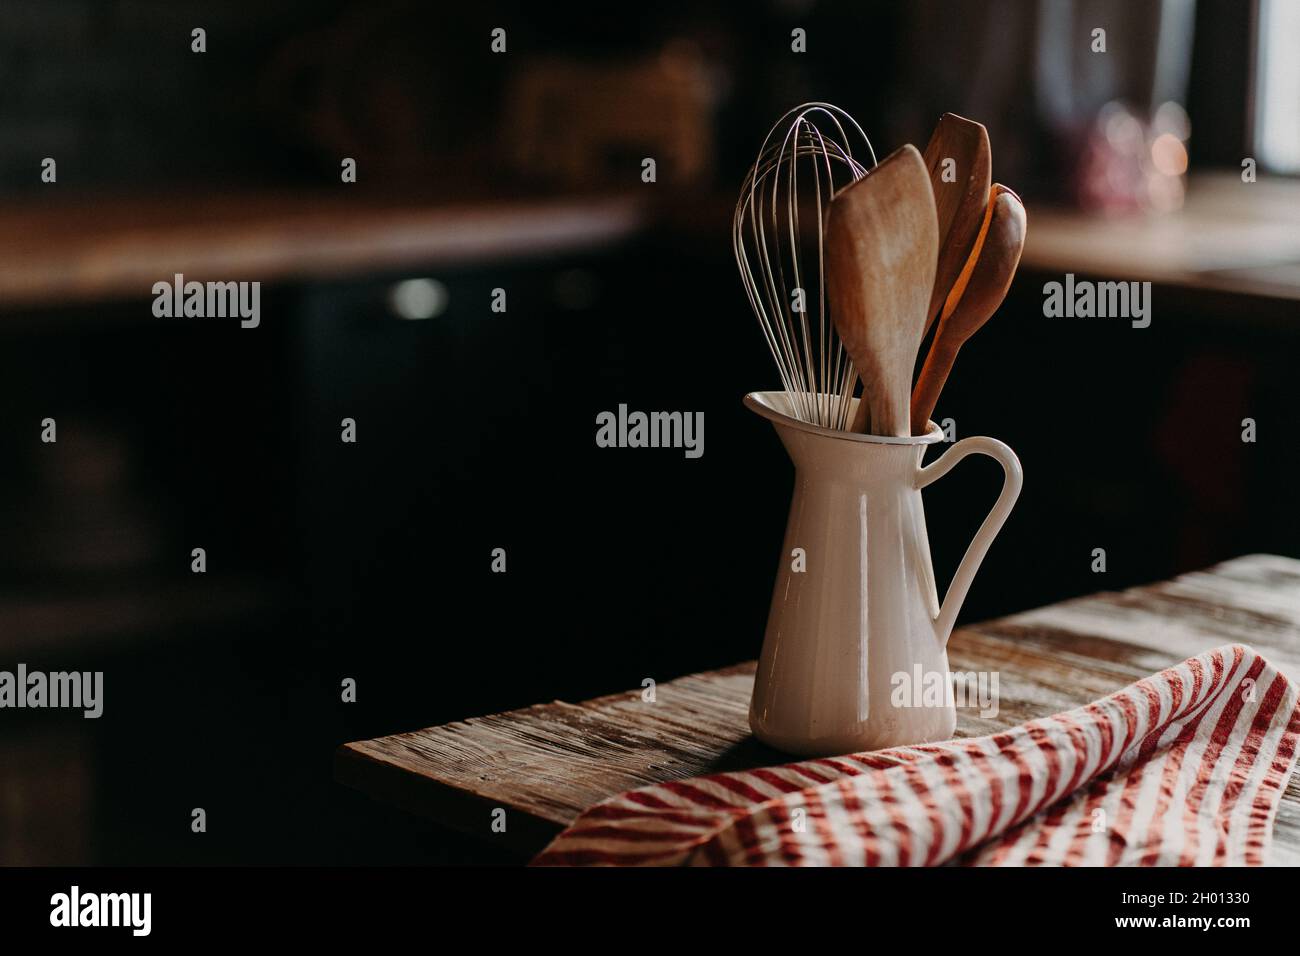 Accessori da cucina su tavolo in legno. Utensili in vaso di ceramica bianca su sfondo scuro. Stile rustico. Stoviglie per preparare il pasto. Cucchiai di legno Foto Stock